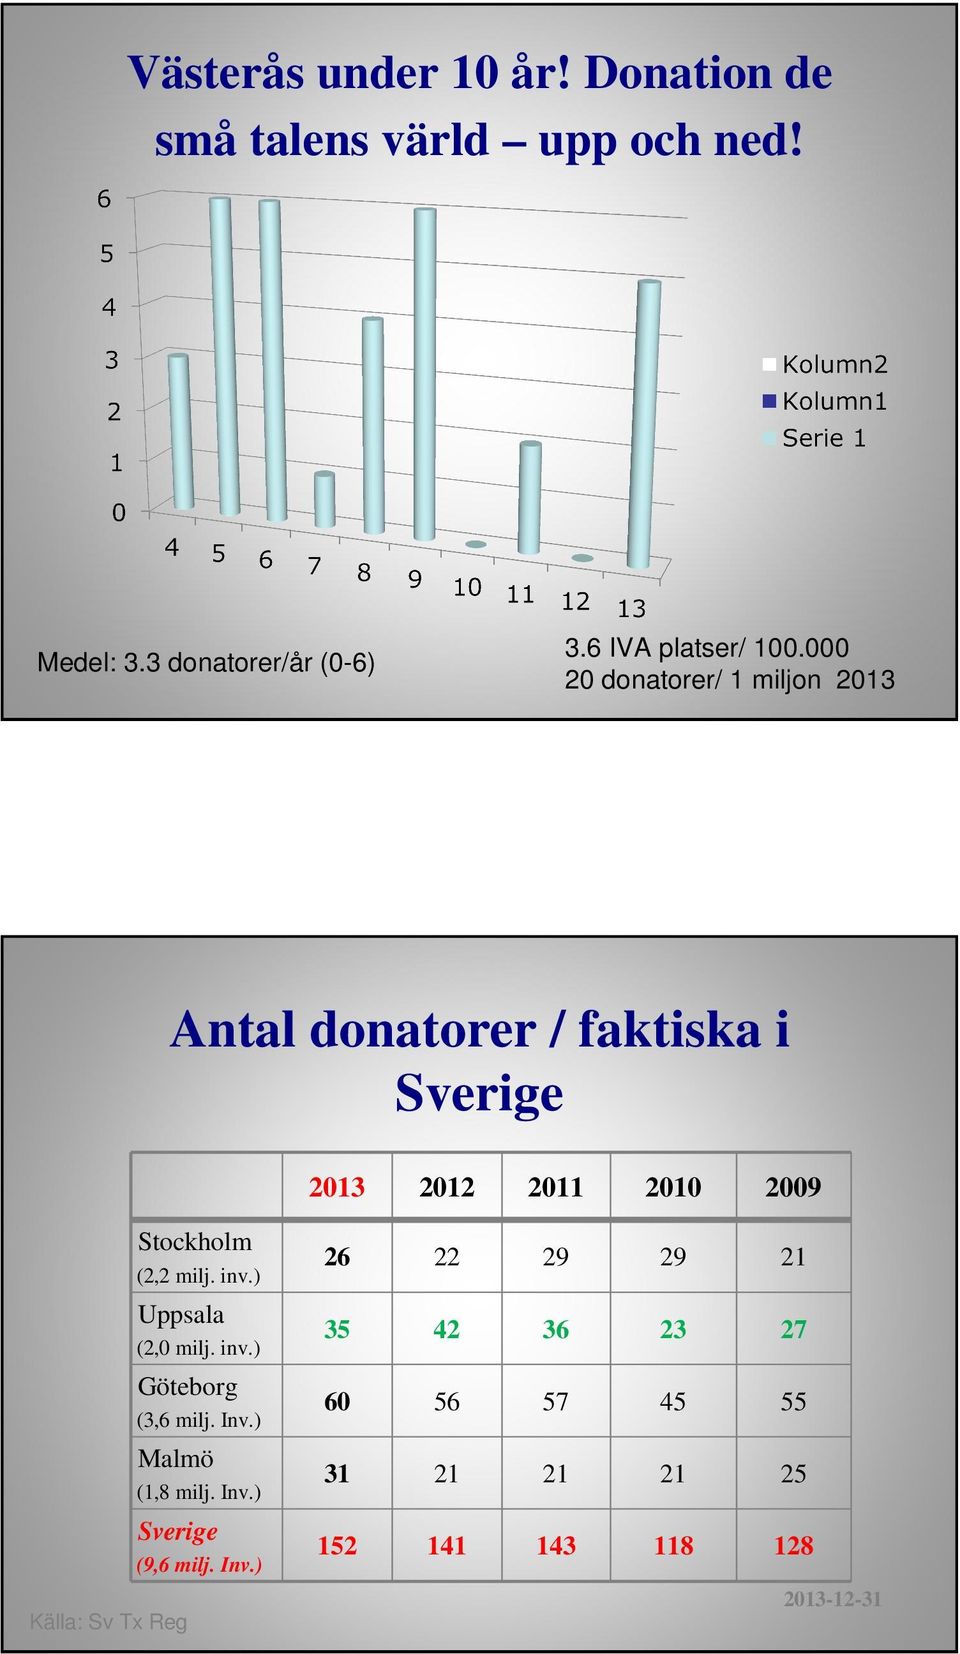 000 20 donatorer/ 1 miljon 2013 Antal donatorer / faktiska i Sverige 2013 2012 2011 20 2009 Källa: Sv Tx Reg